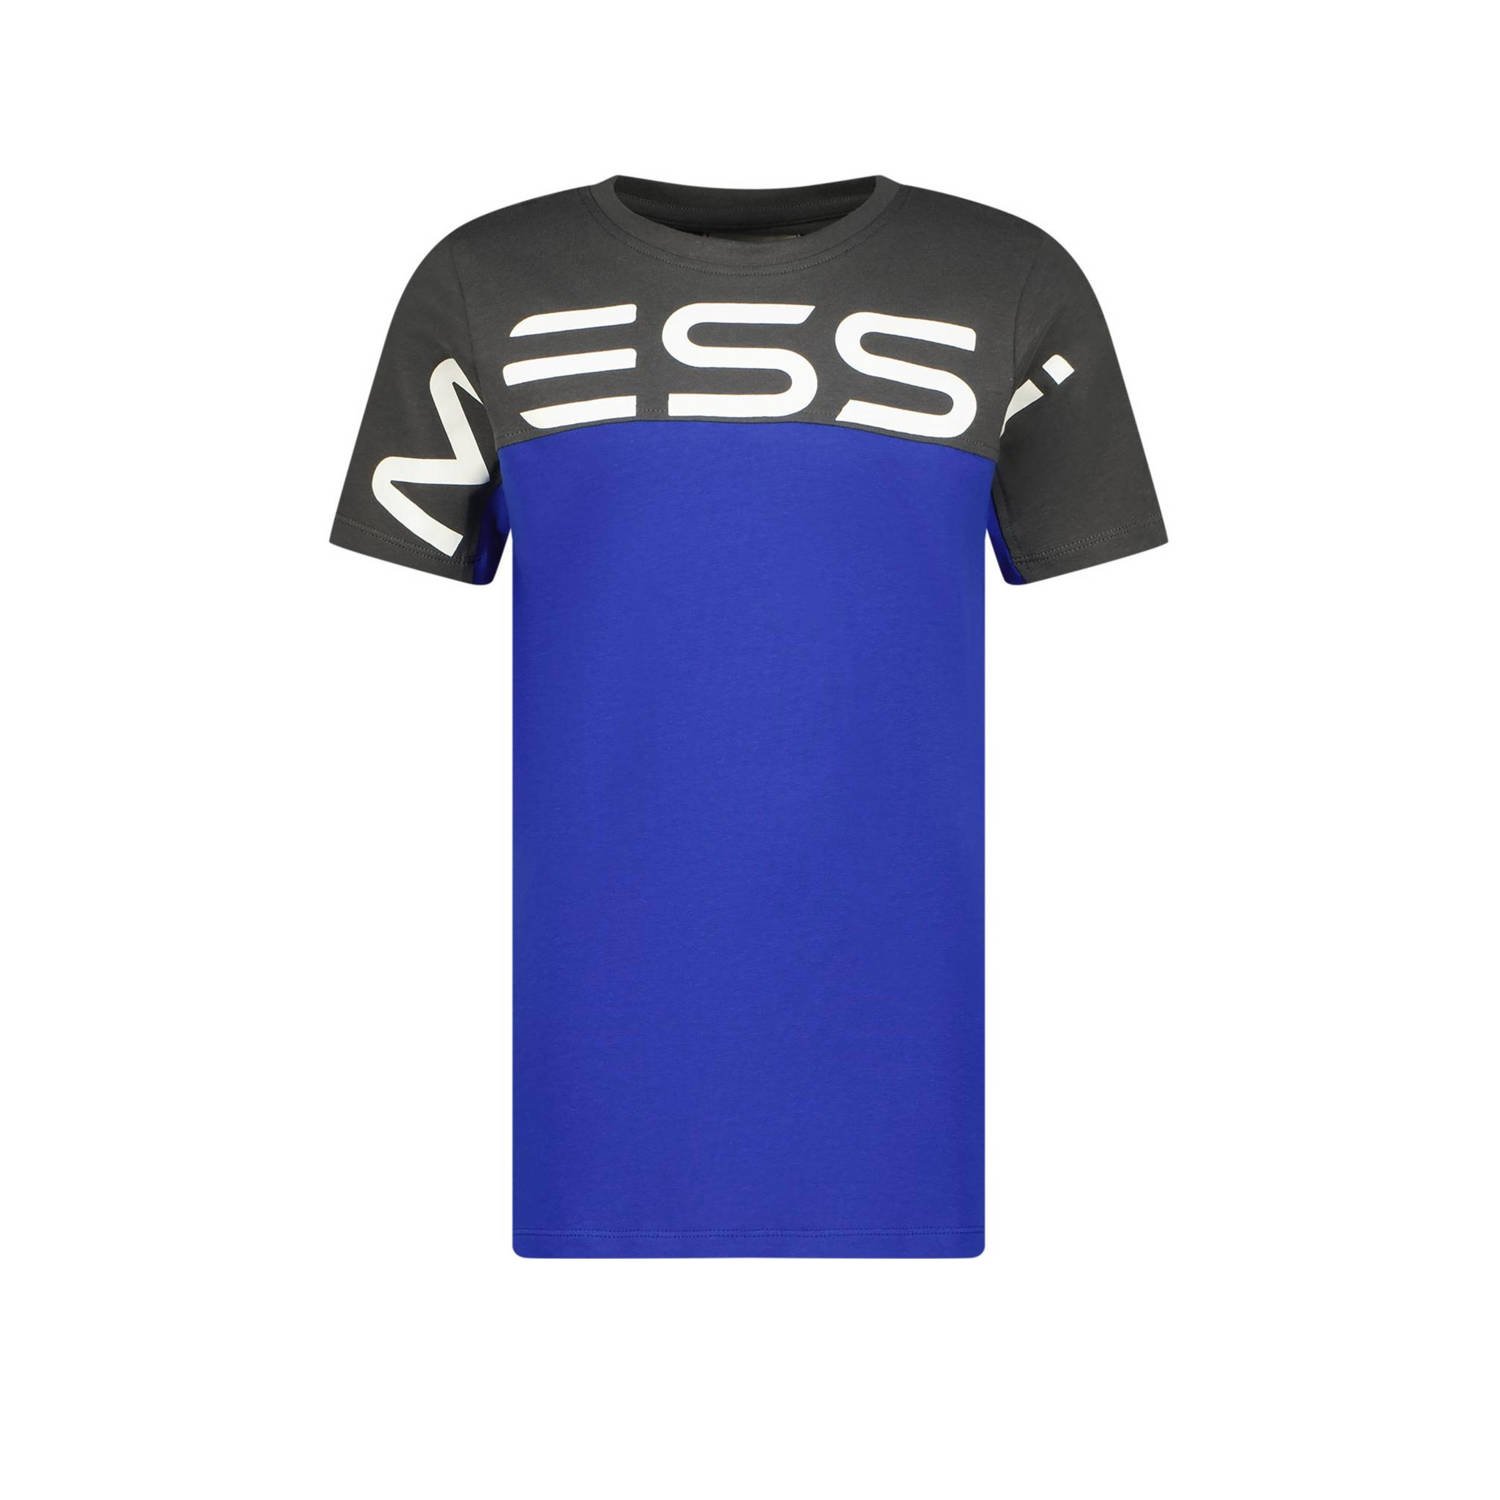 VINGINO x Messi T-shirt Jint met logo hardblauw donkergrijs Jongens Stretchkatoen Ronde hals 116